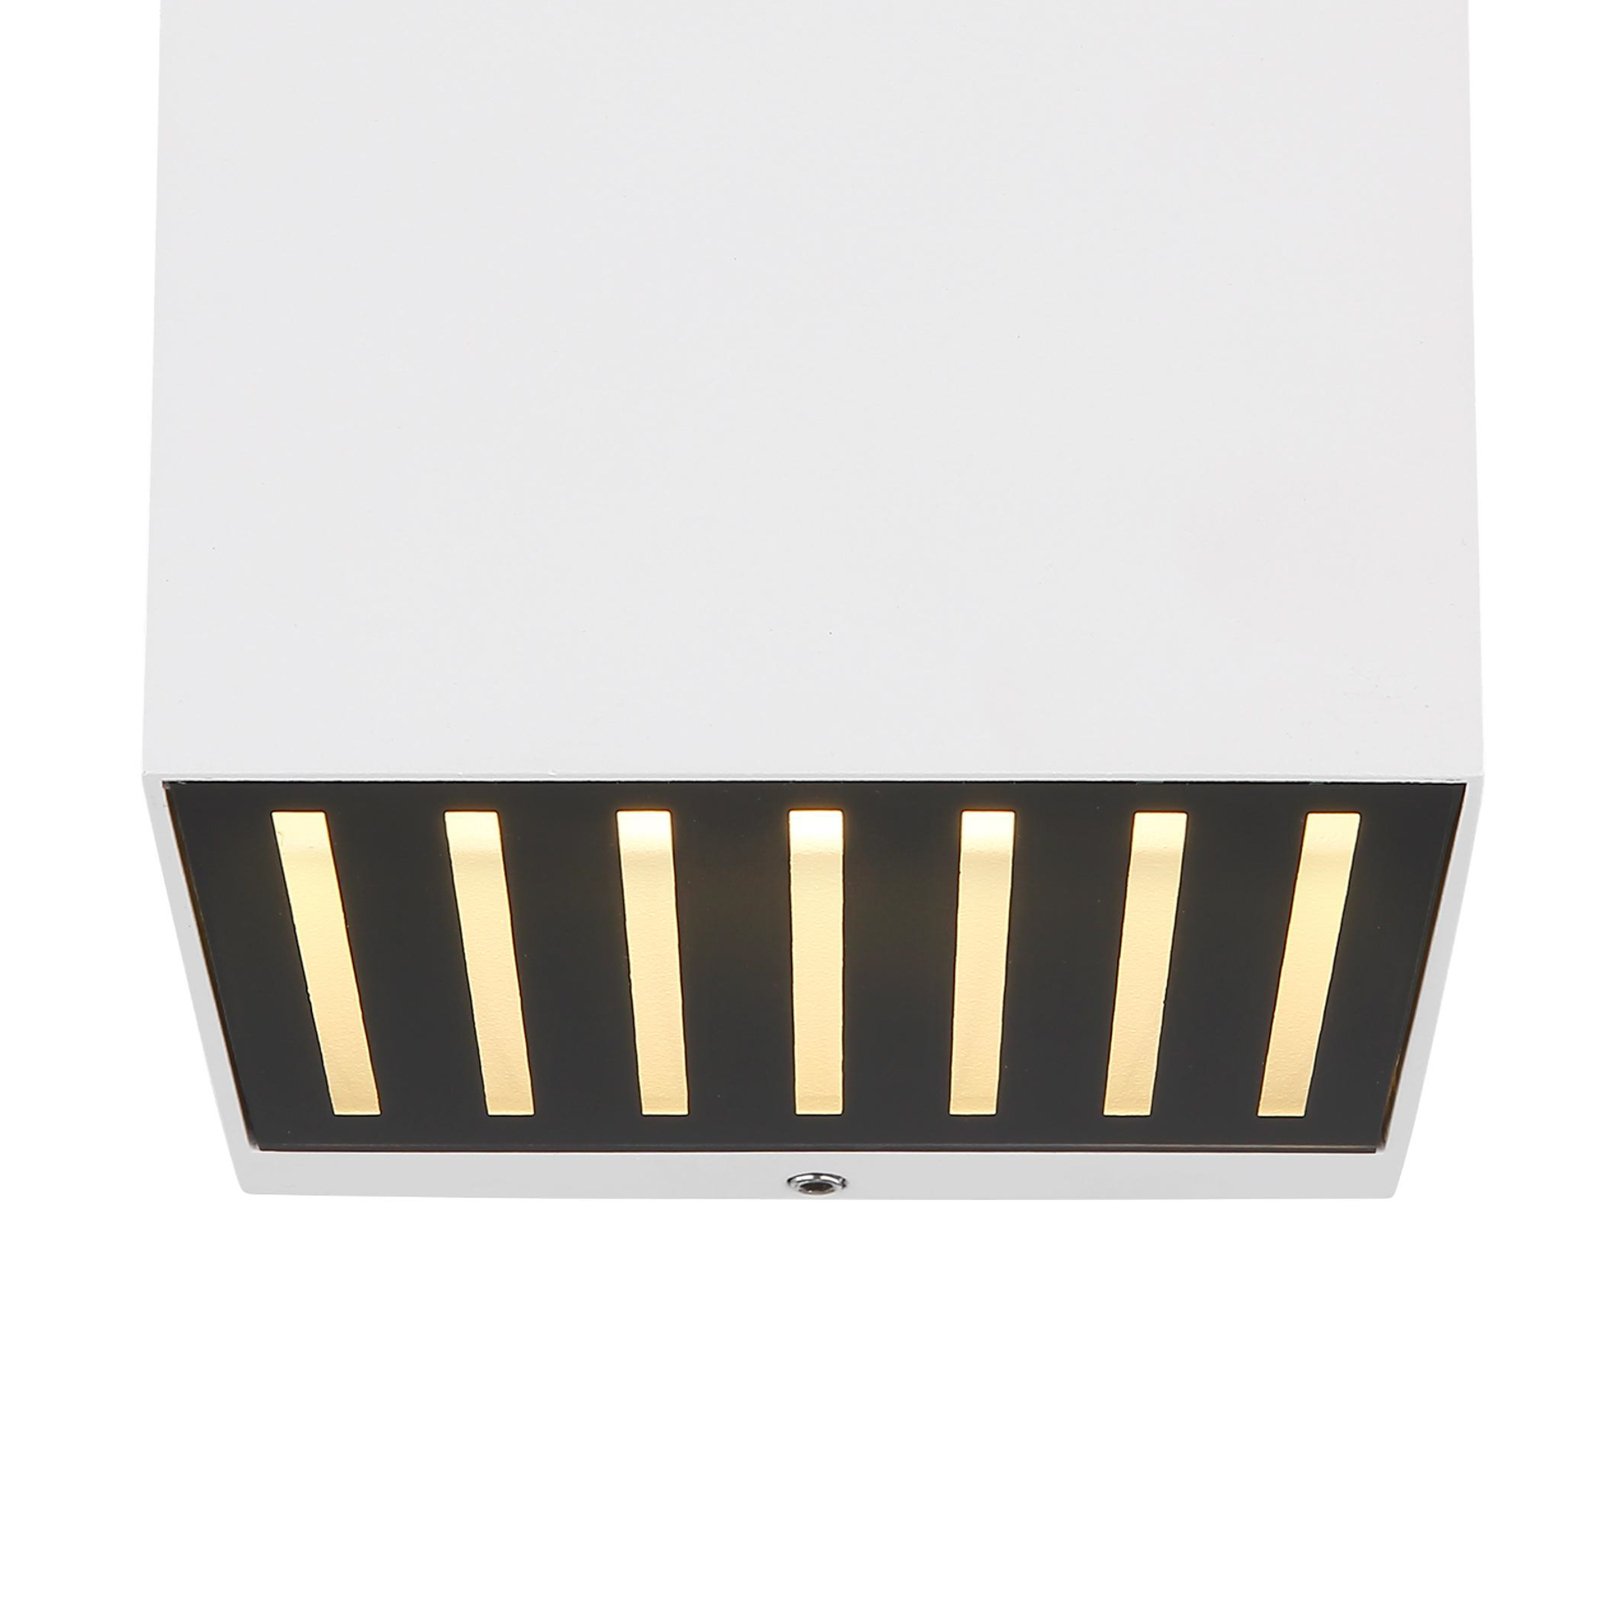 LED-Außenwandlampe Illi, weiß, Breite 10 cm, Alu, IP54